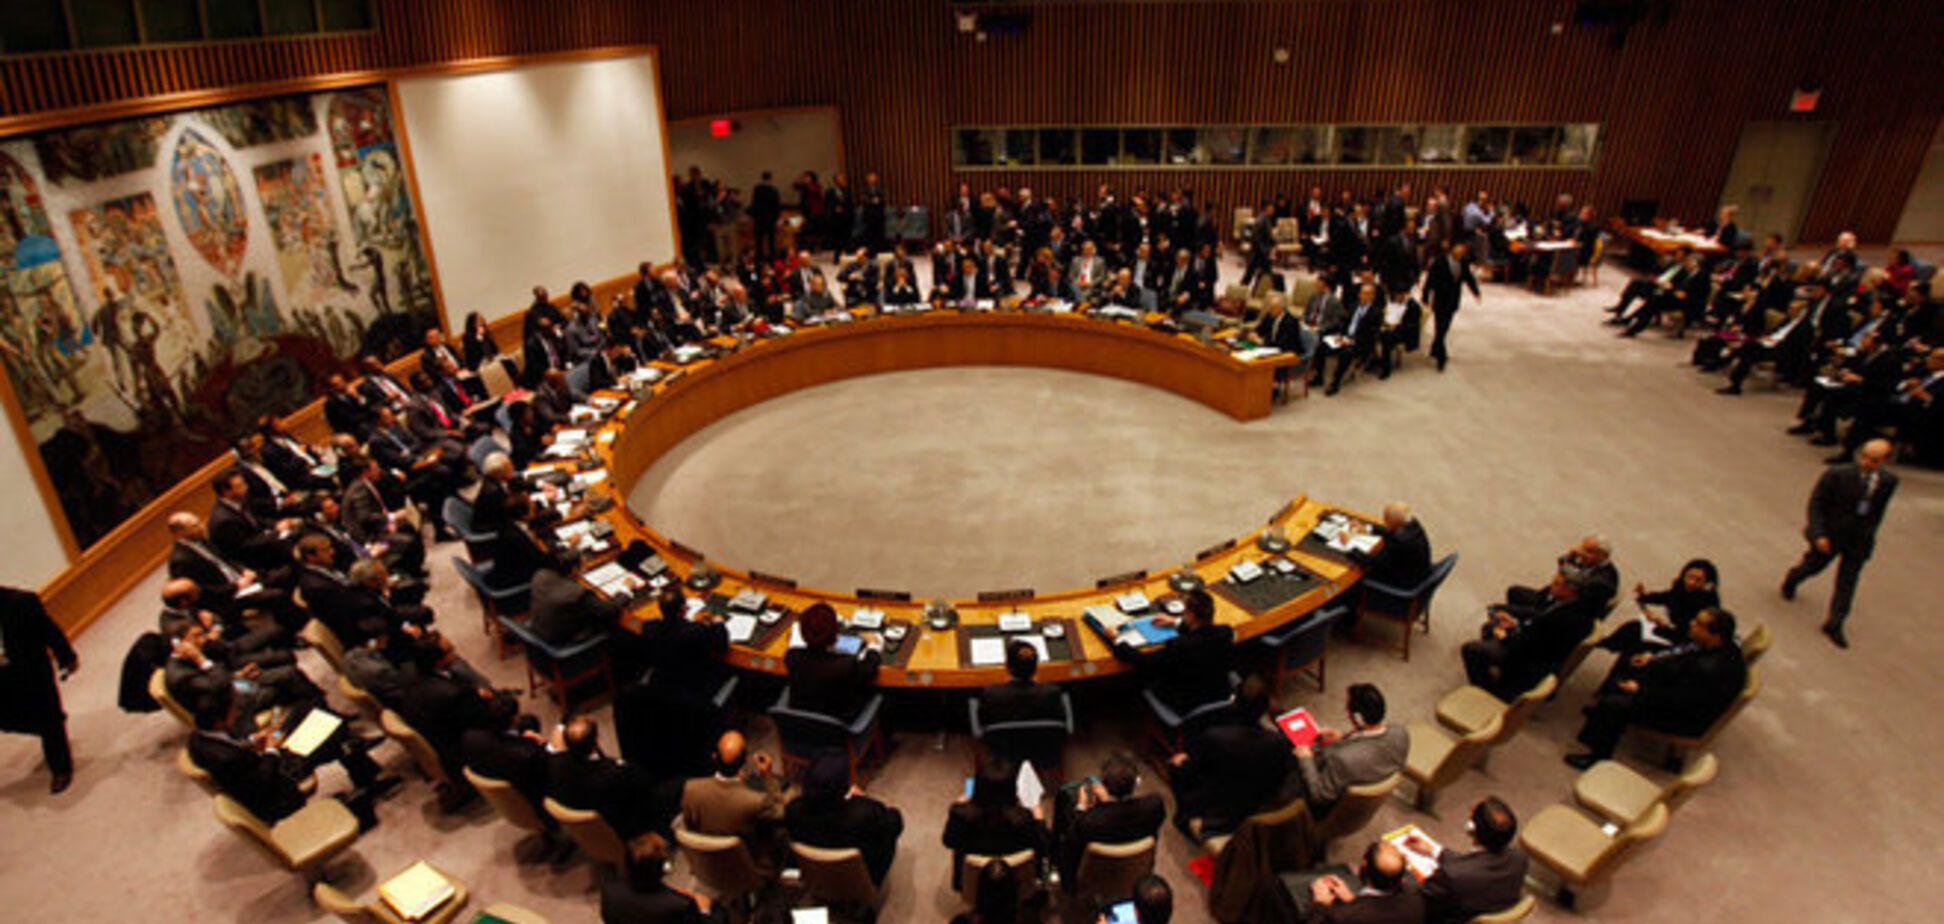 Рада Безпеки ООН почала екстрене засідання через введення військ РФ в Україну. Пряма трансляція